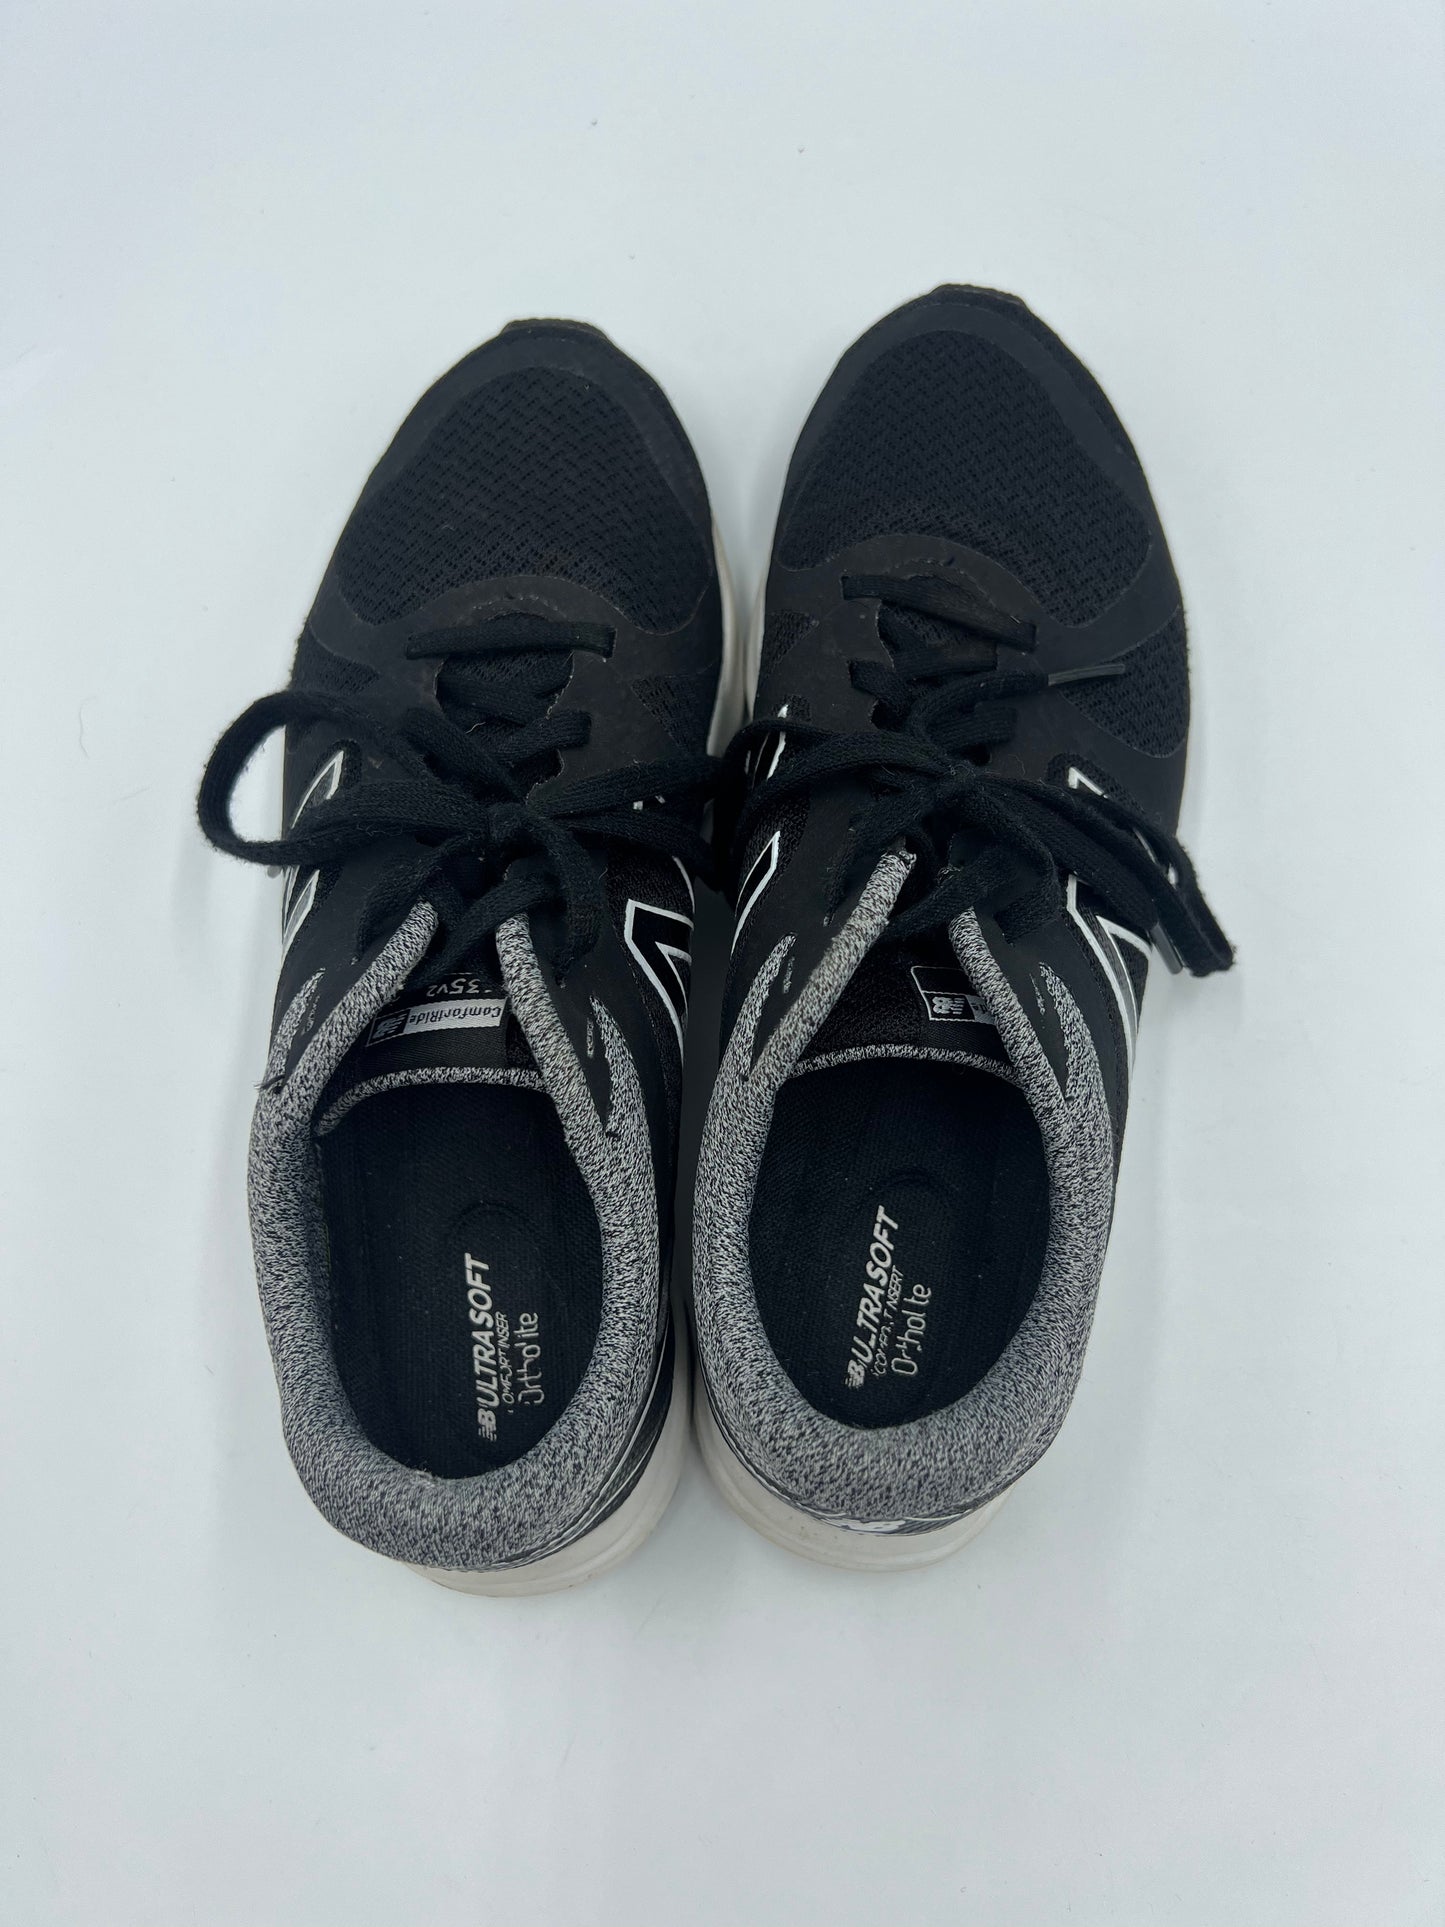 Black Shoes Athletic New Balance, Size 8